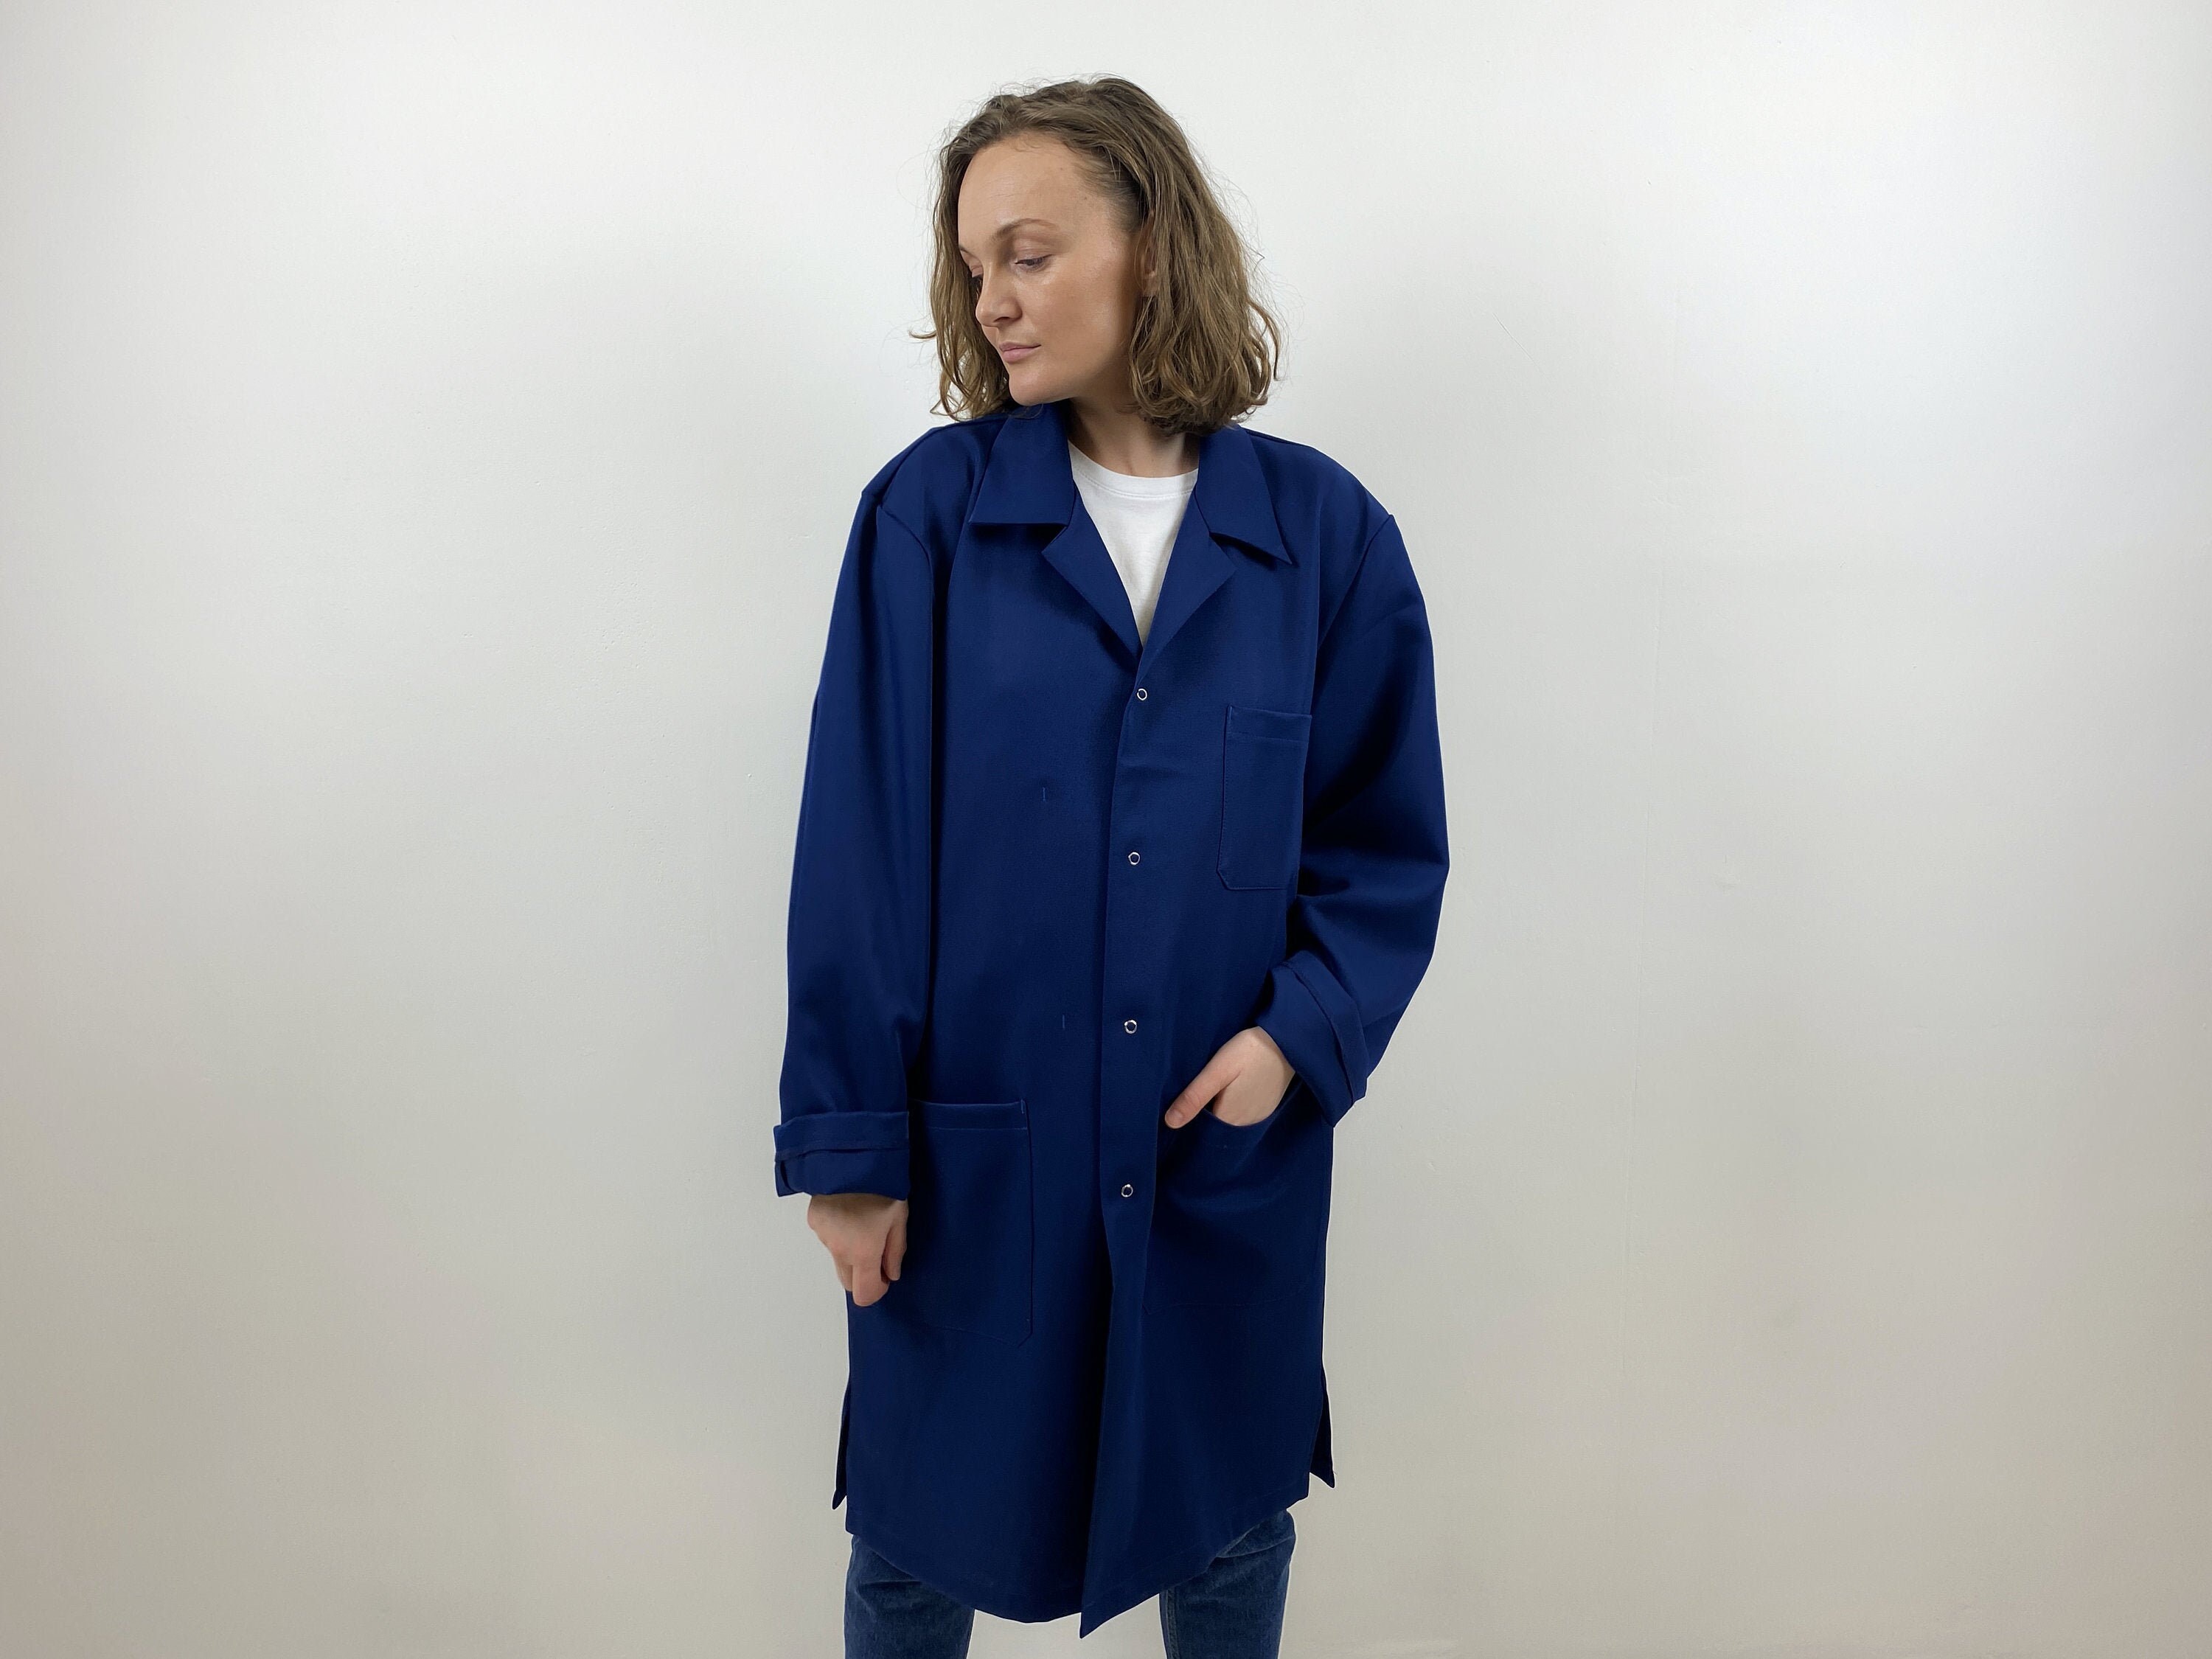 Vintage Indigo Blue Chore Jacket Coat long french work jacket utility jacket men's work wear warehouse jacket size XL